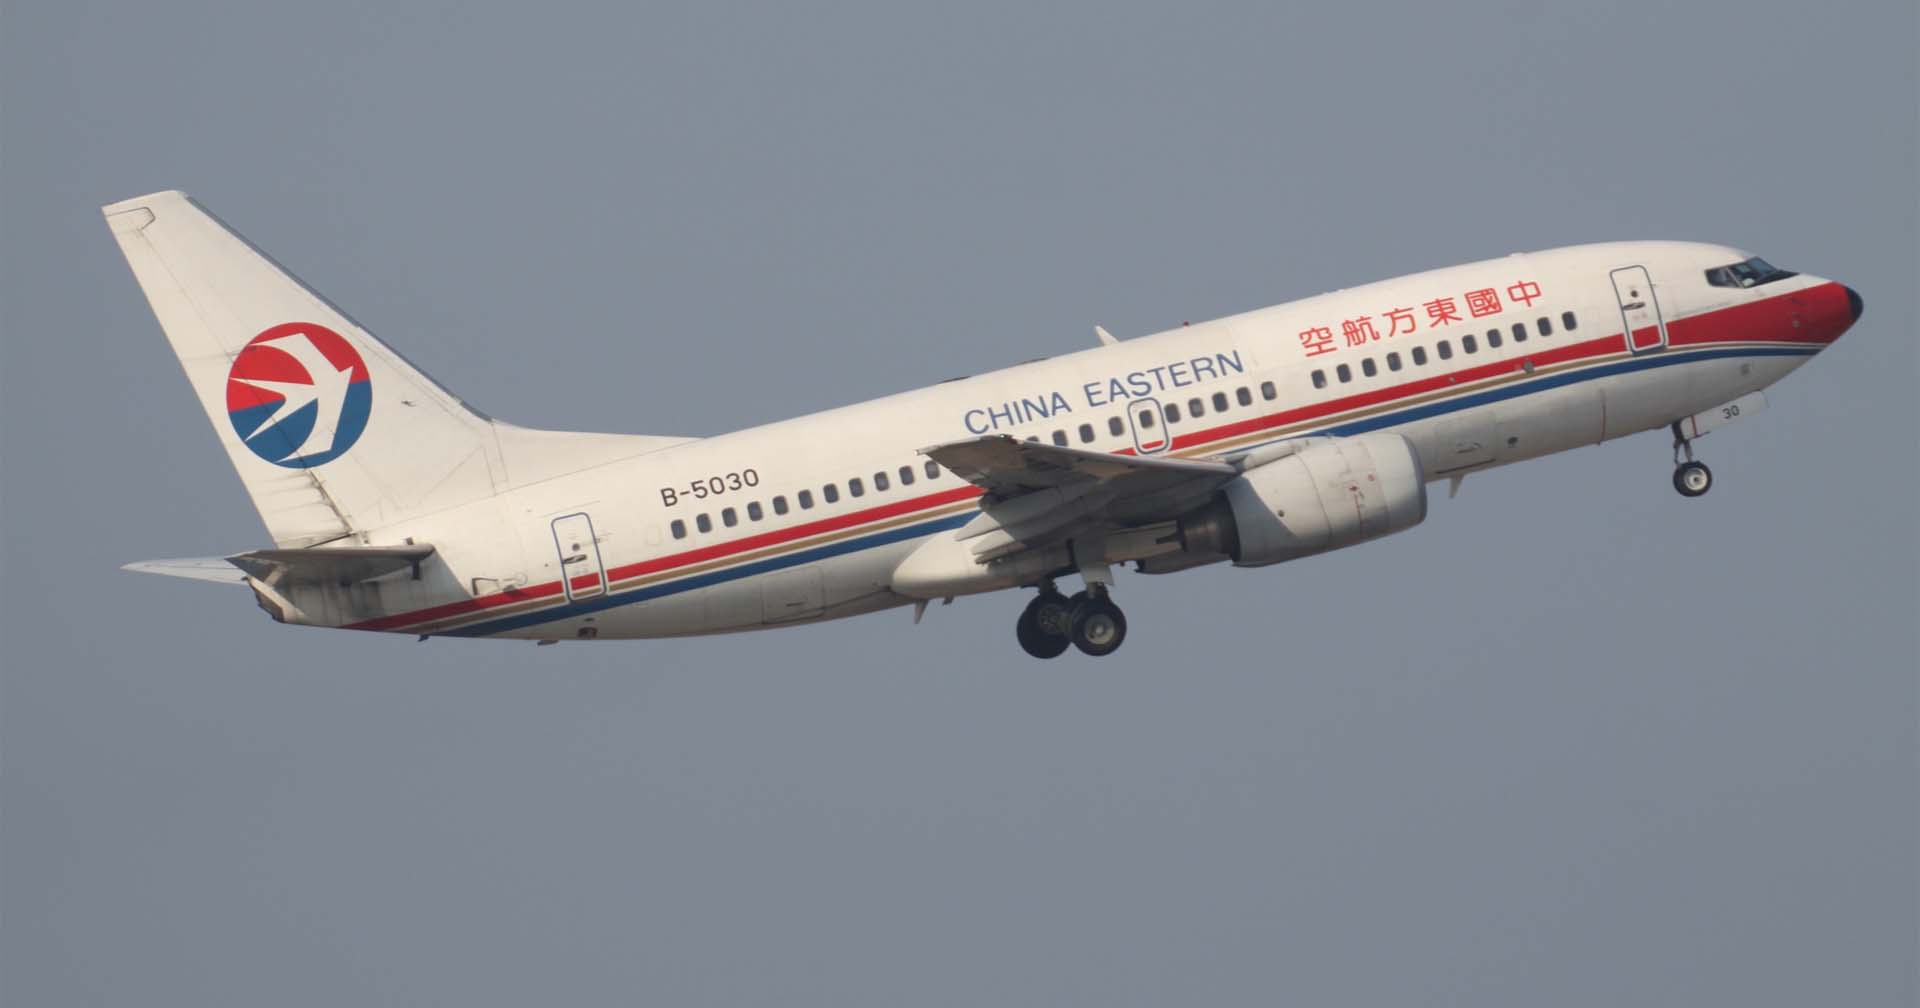 เครื่องบินโดยสารโบอิ้ง-737 พร้อมผู้โดยสาร 132 คน เกิดอุบัติเหตุตกที่จีน